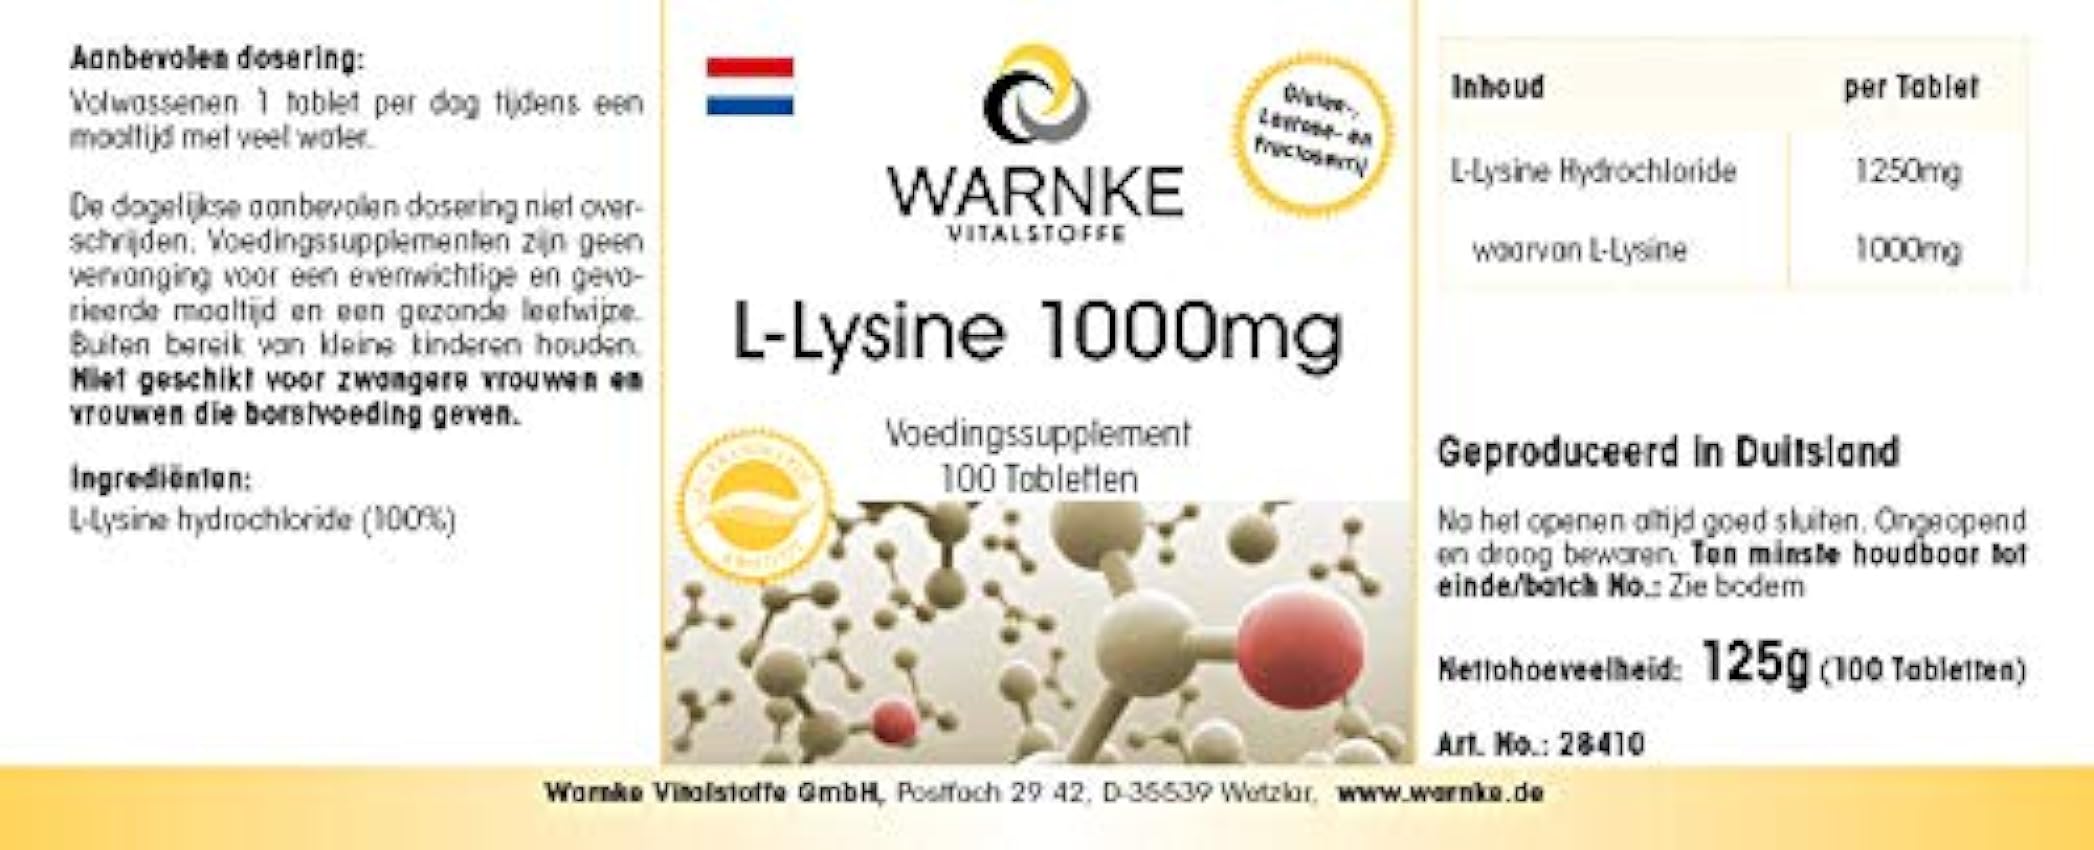 Lisina comprimidos - 1000mg - vegano - 100 comprimidos - aminoácidos | Warnke Vitalstoffe foJrnORP